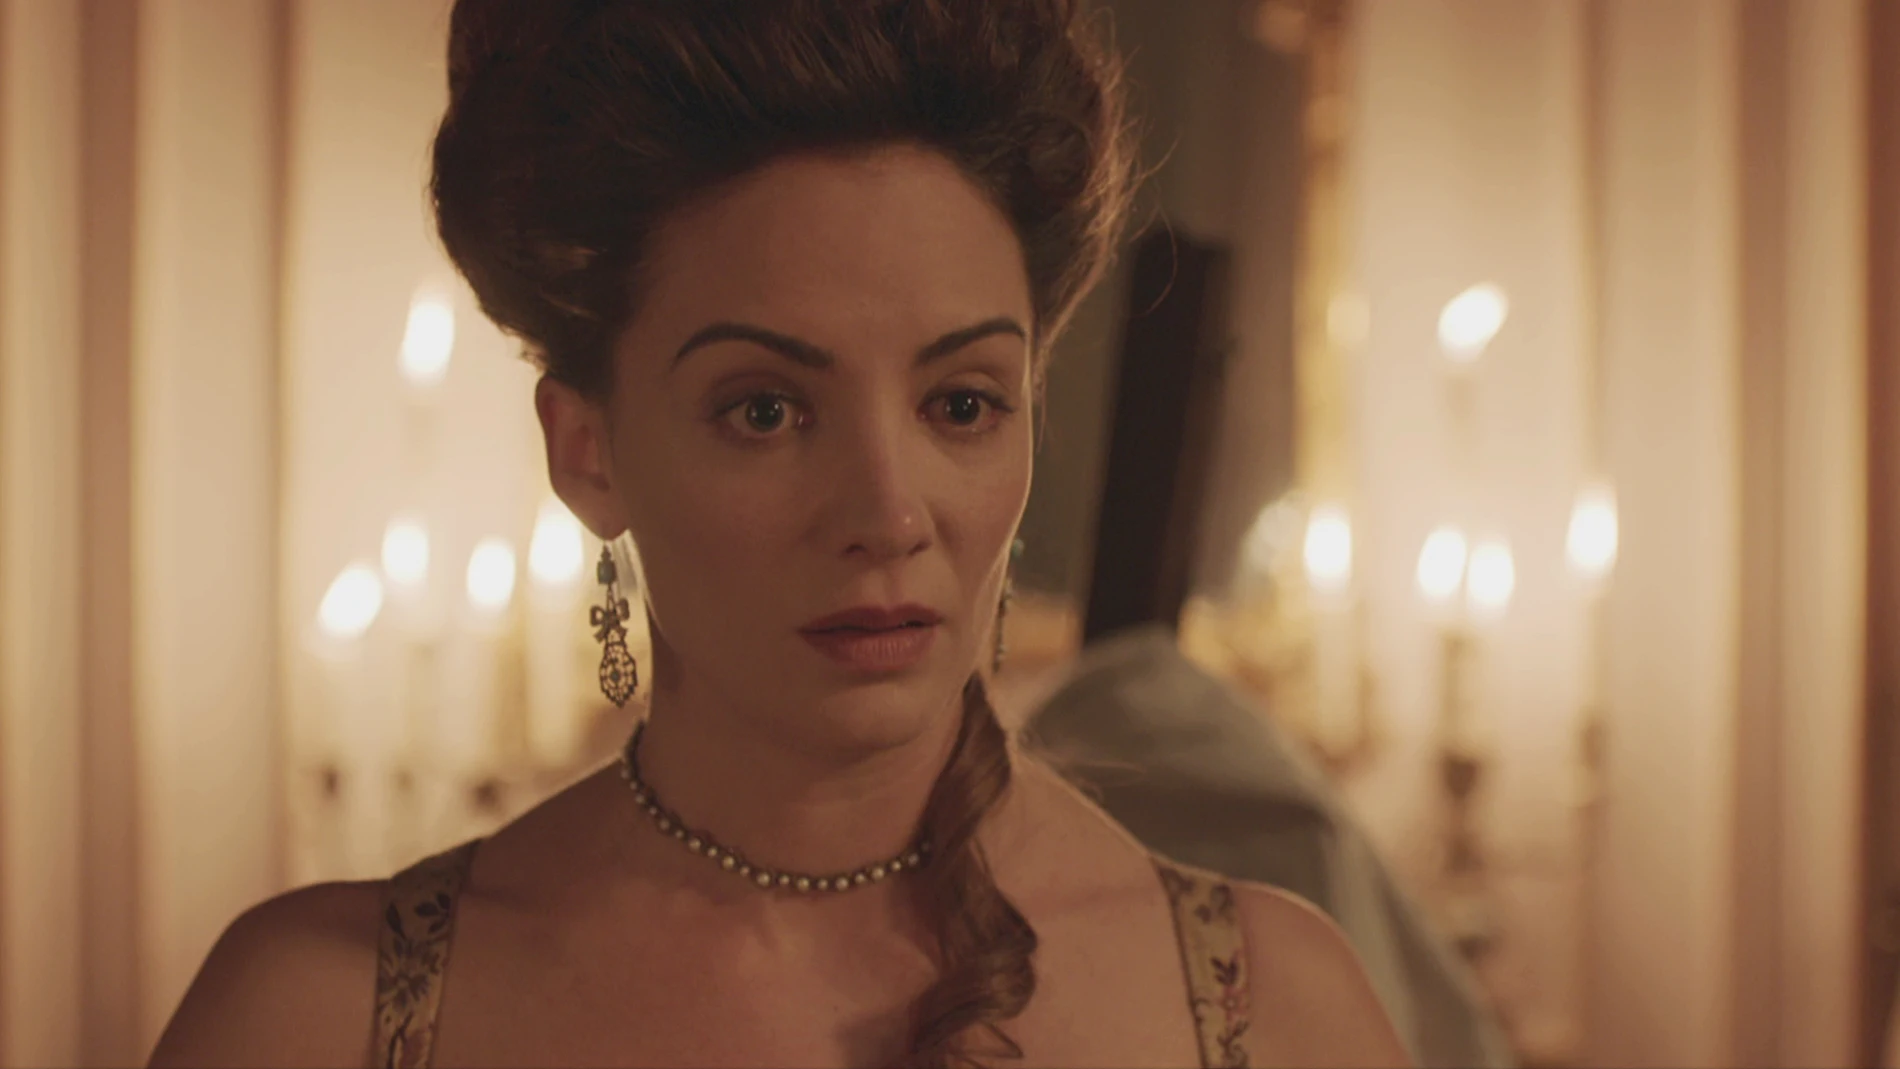  “Pronto Gabriel será mi marido”, la confusión de Amelia en medio de su rabieta contra Clara